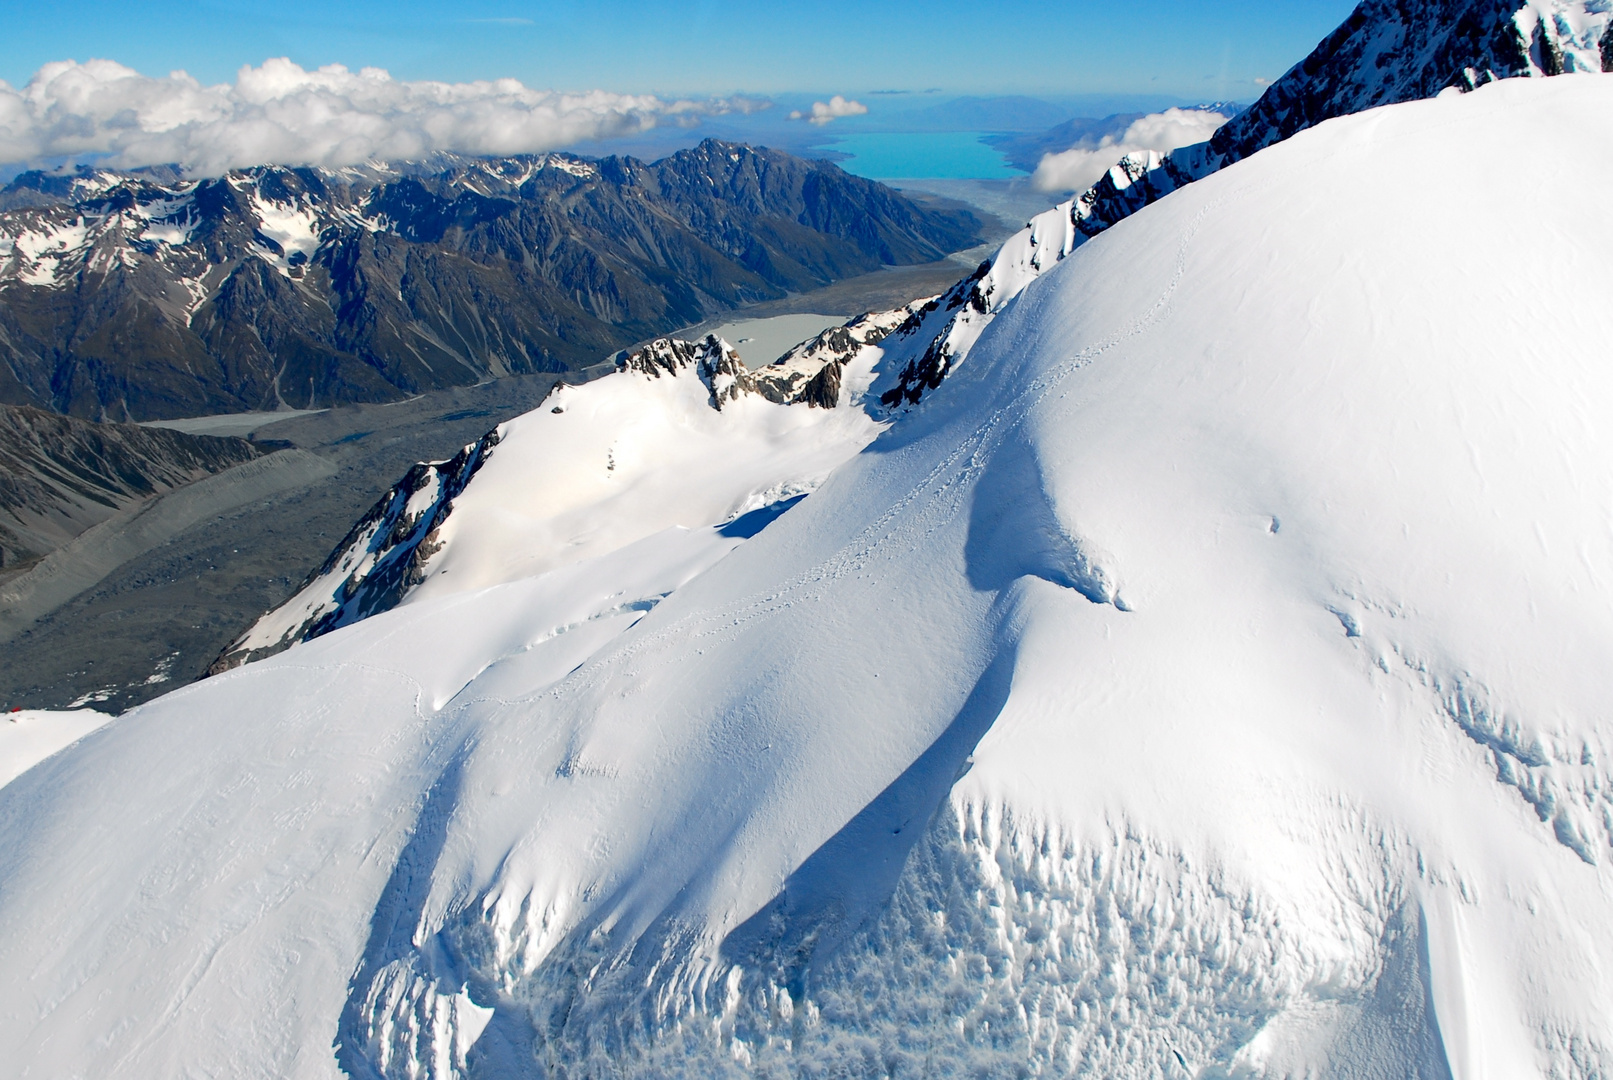 Tasman Glacier with view to the Lake Pukaki